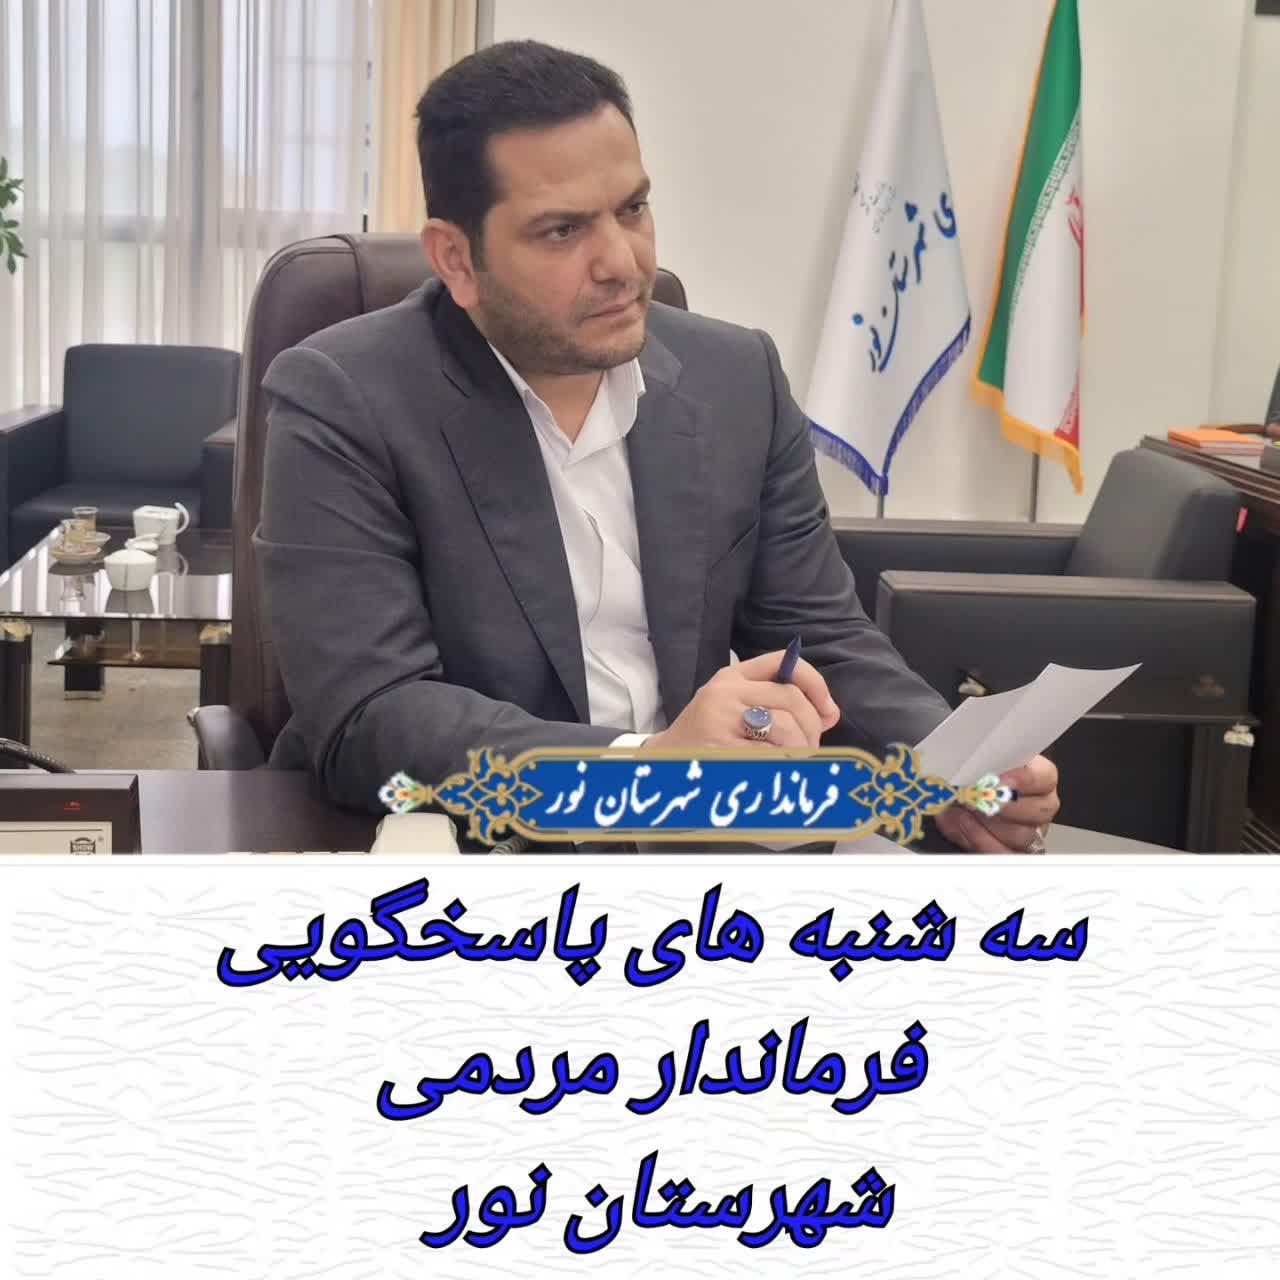 سه شنبه های پاسخگویی فرماندار مردمی شهرستان نور 